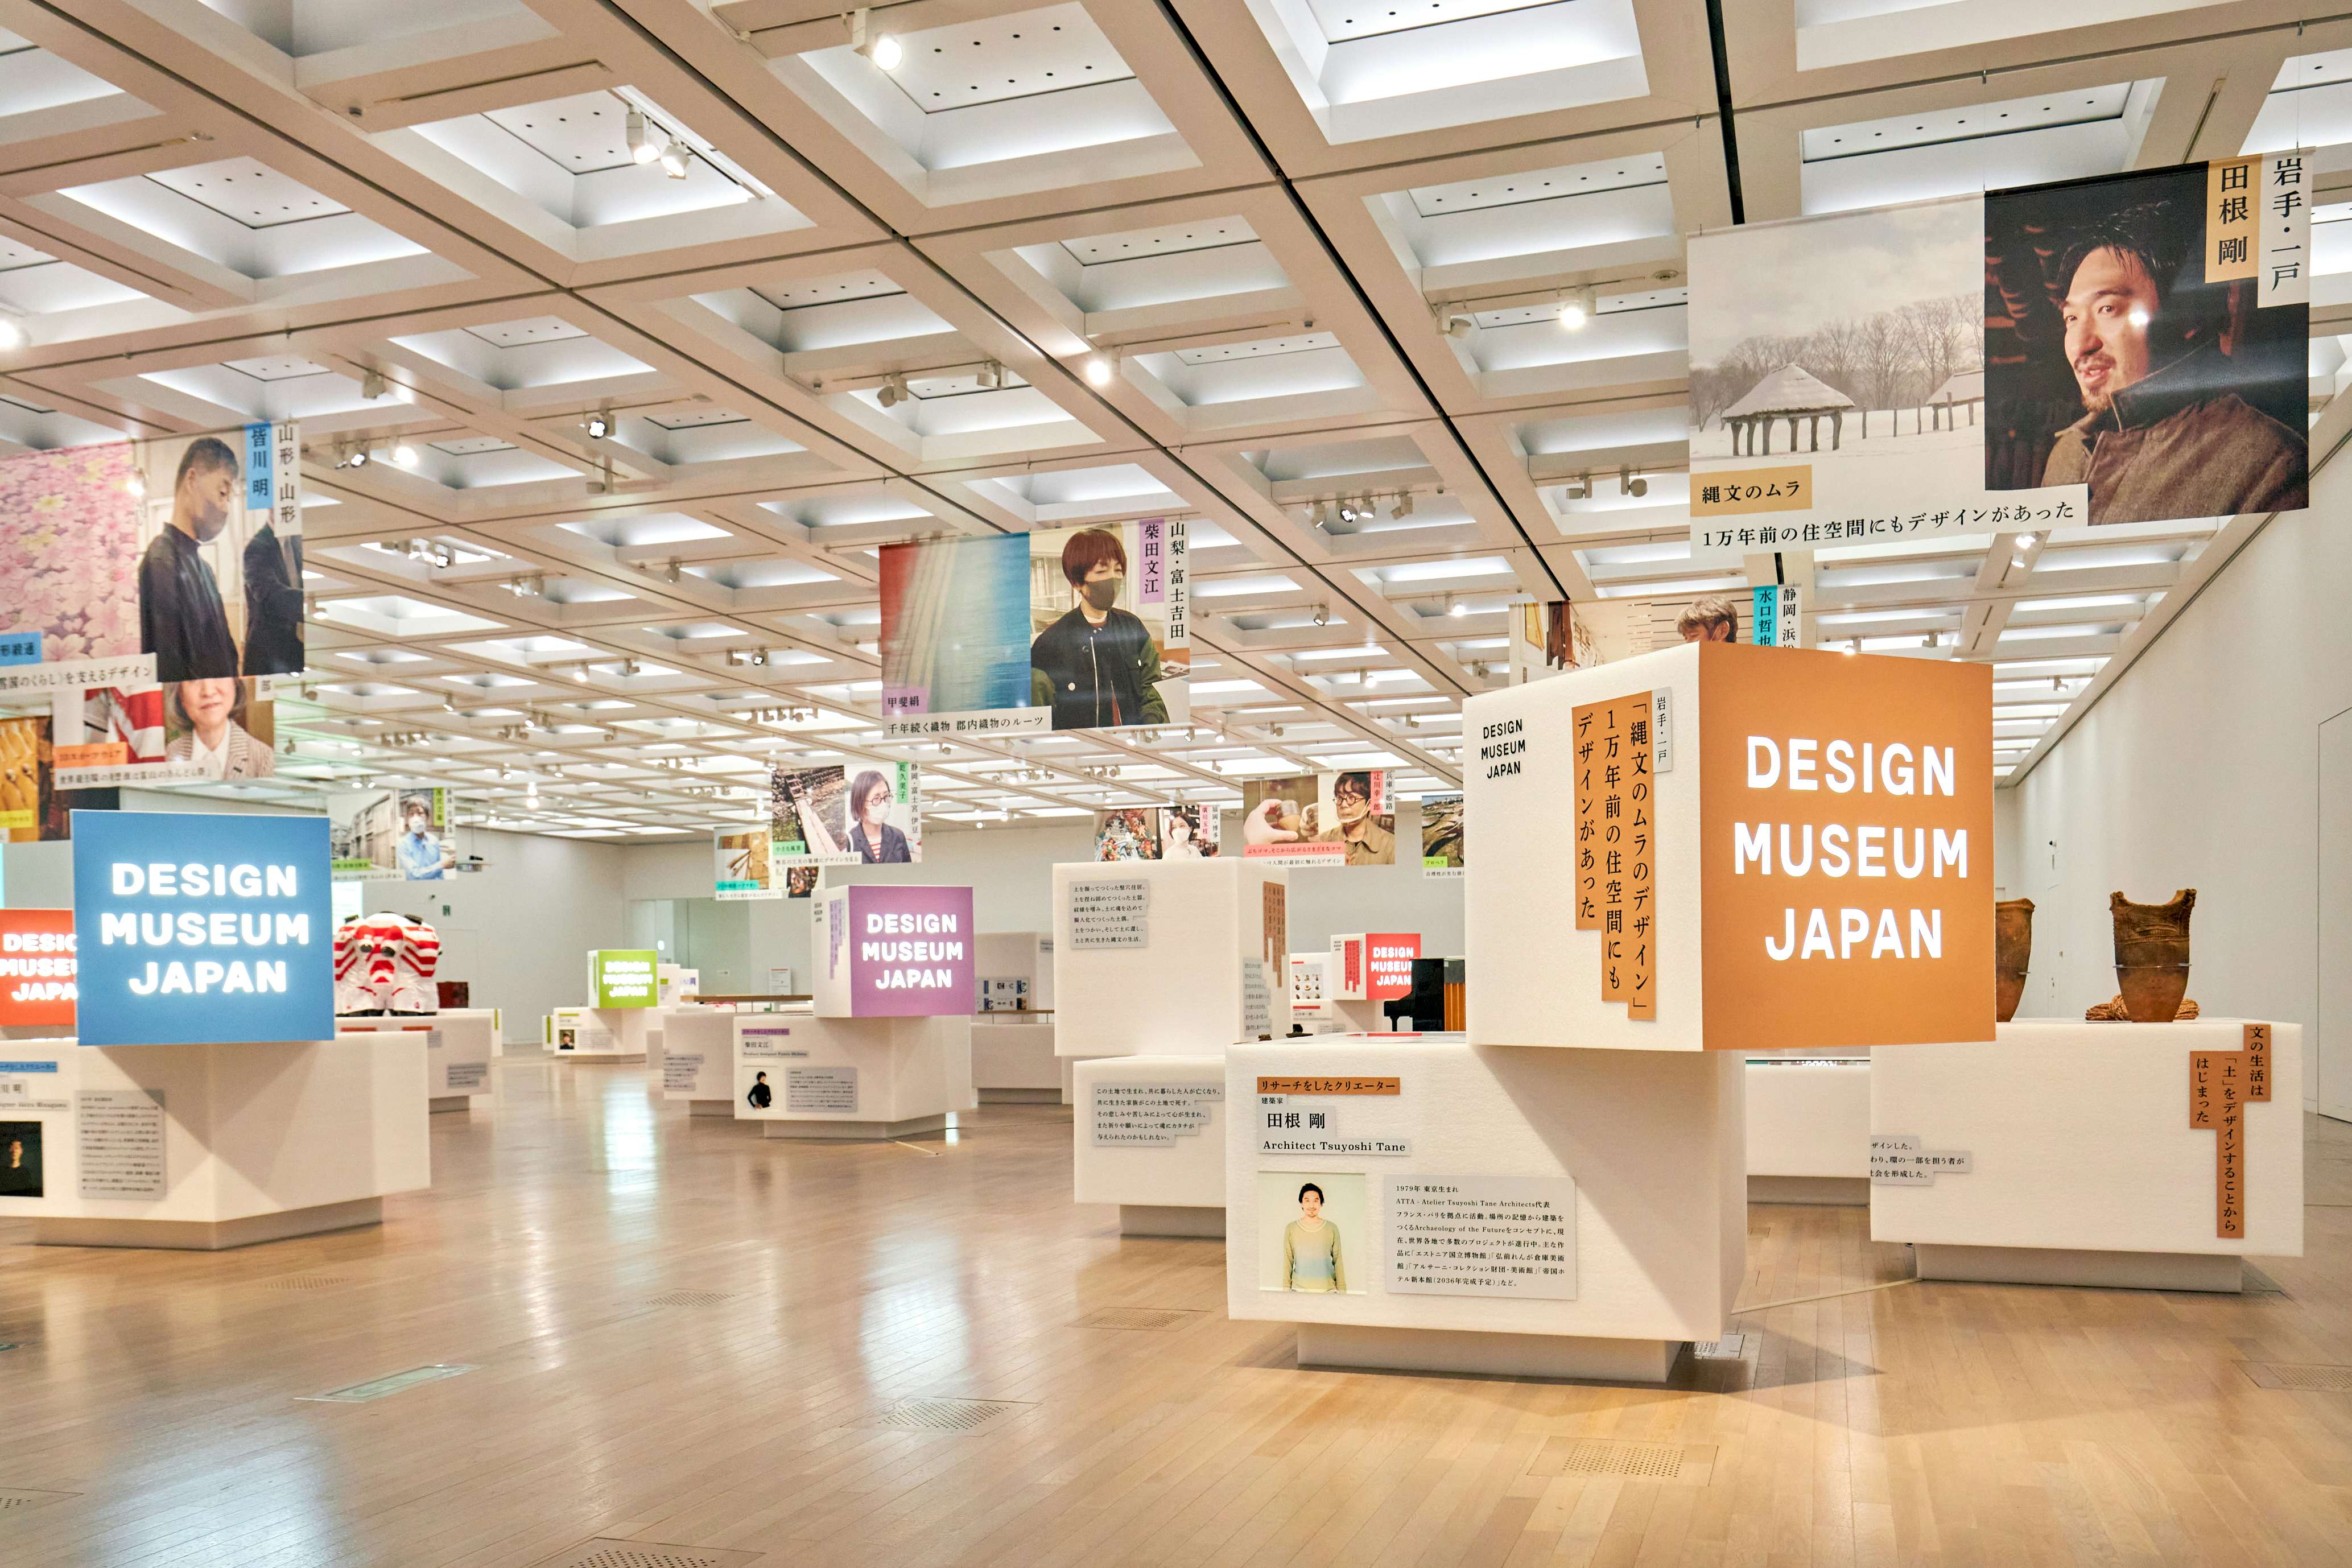 日本中の「デザインの宝」をネットワークする。「DESIGN MUSEUM JAPAN